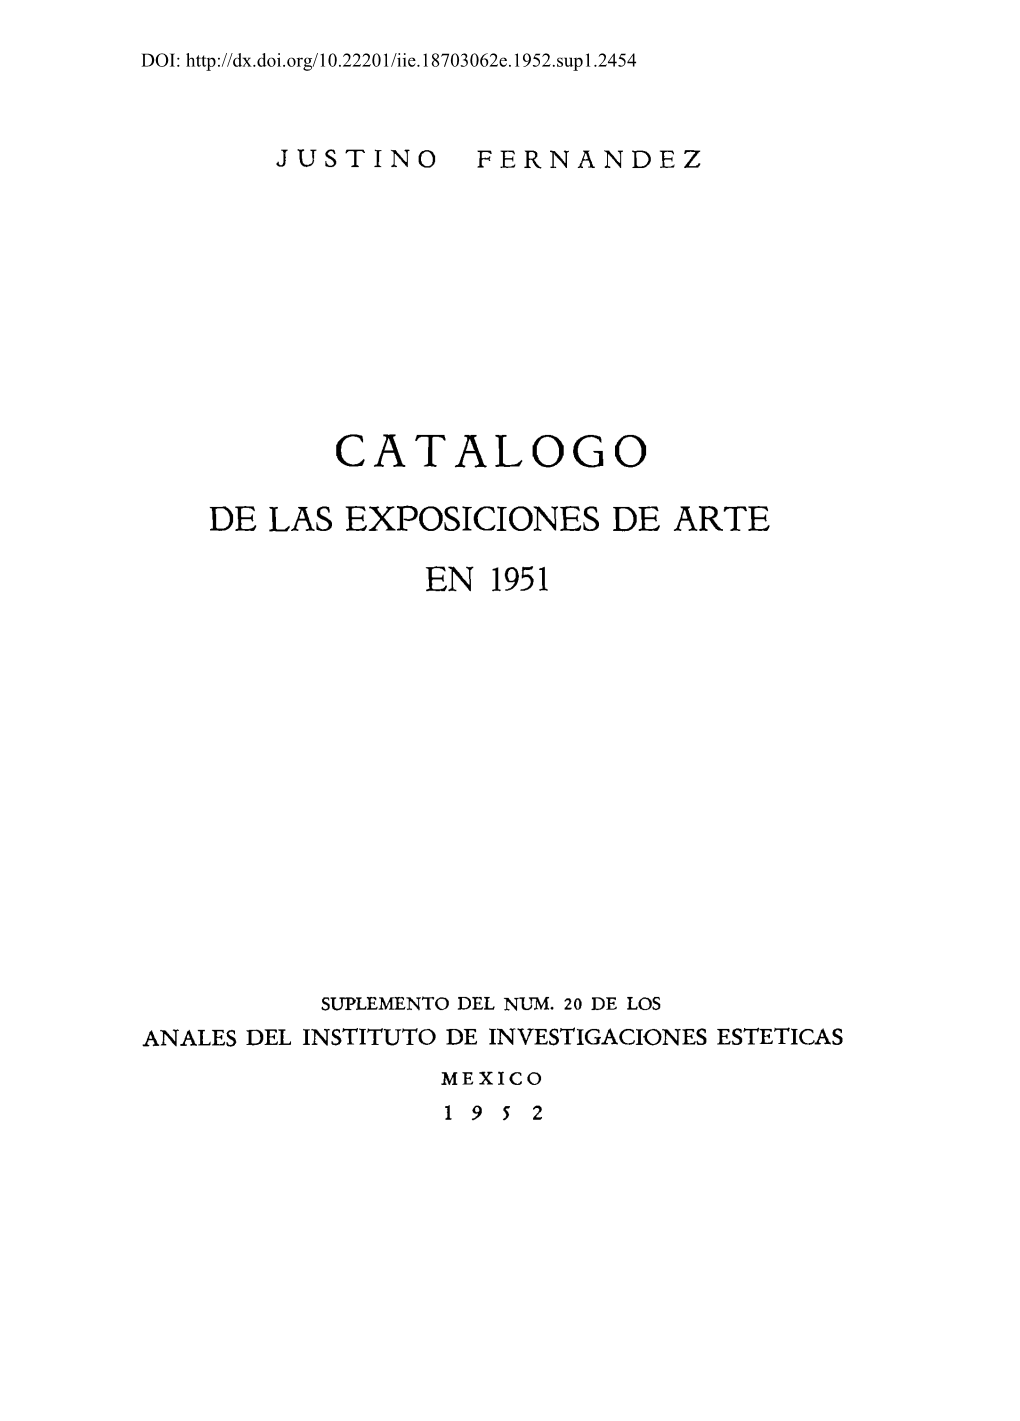 Catalogo De Las Exposiciones De Arte En 1951